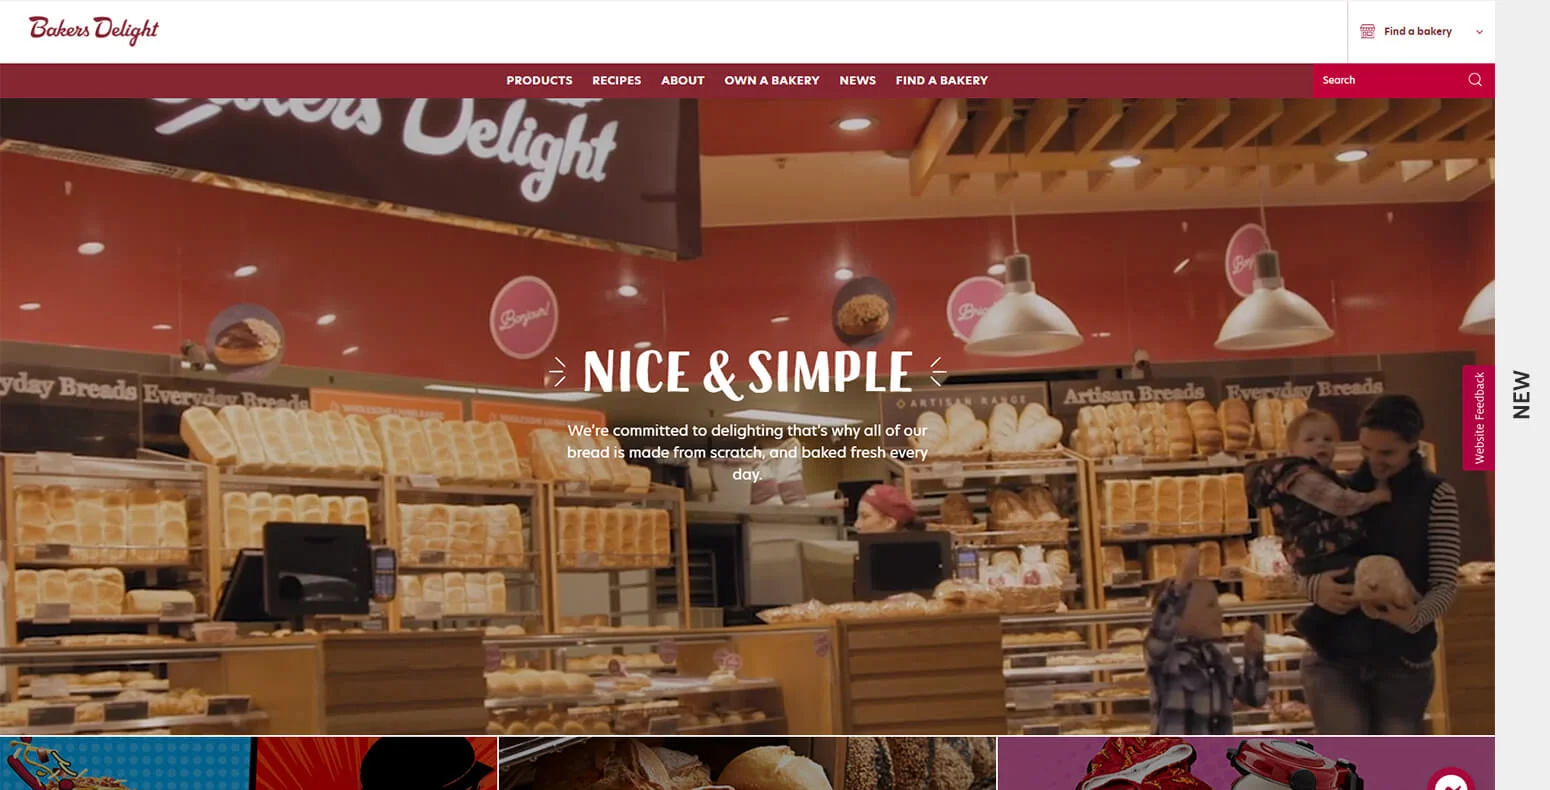 New Creative Design of Bakers Delight Website